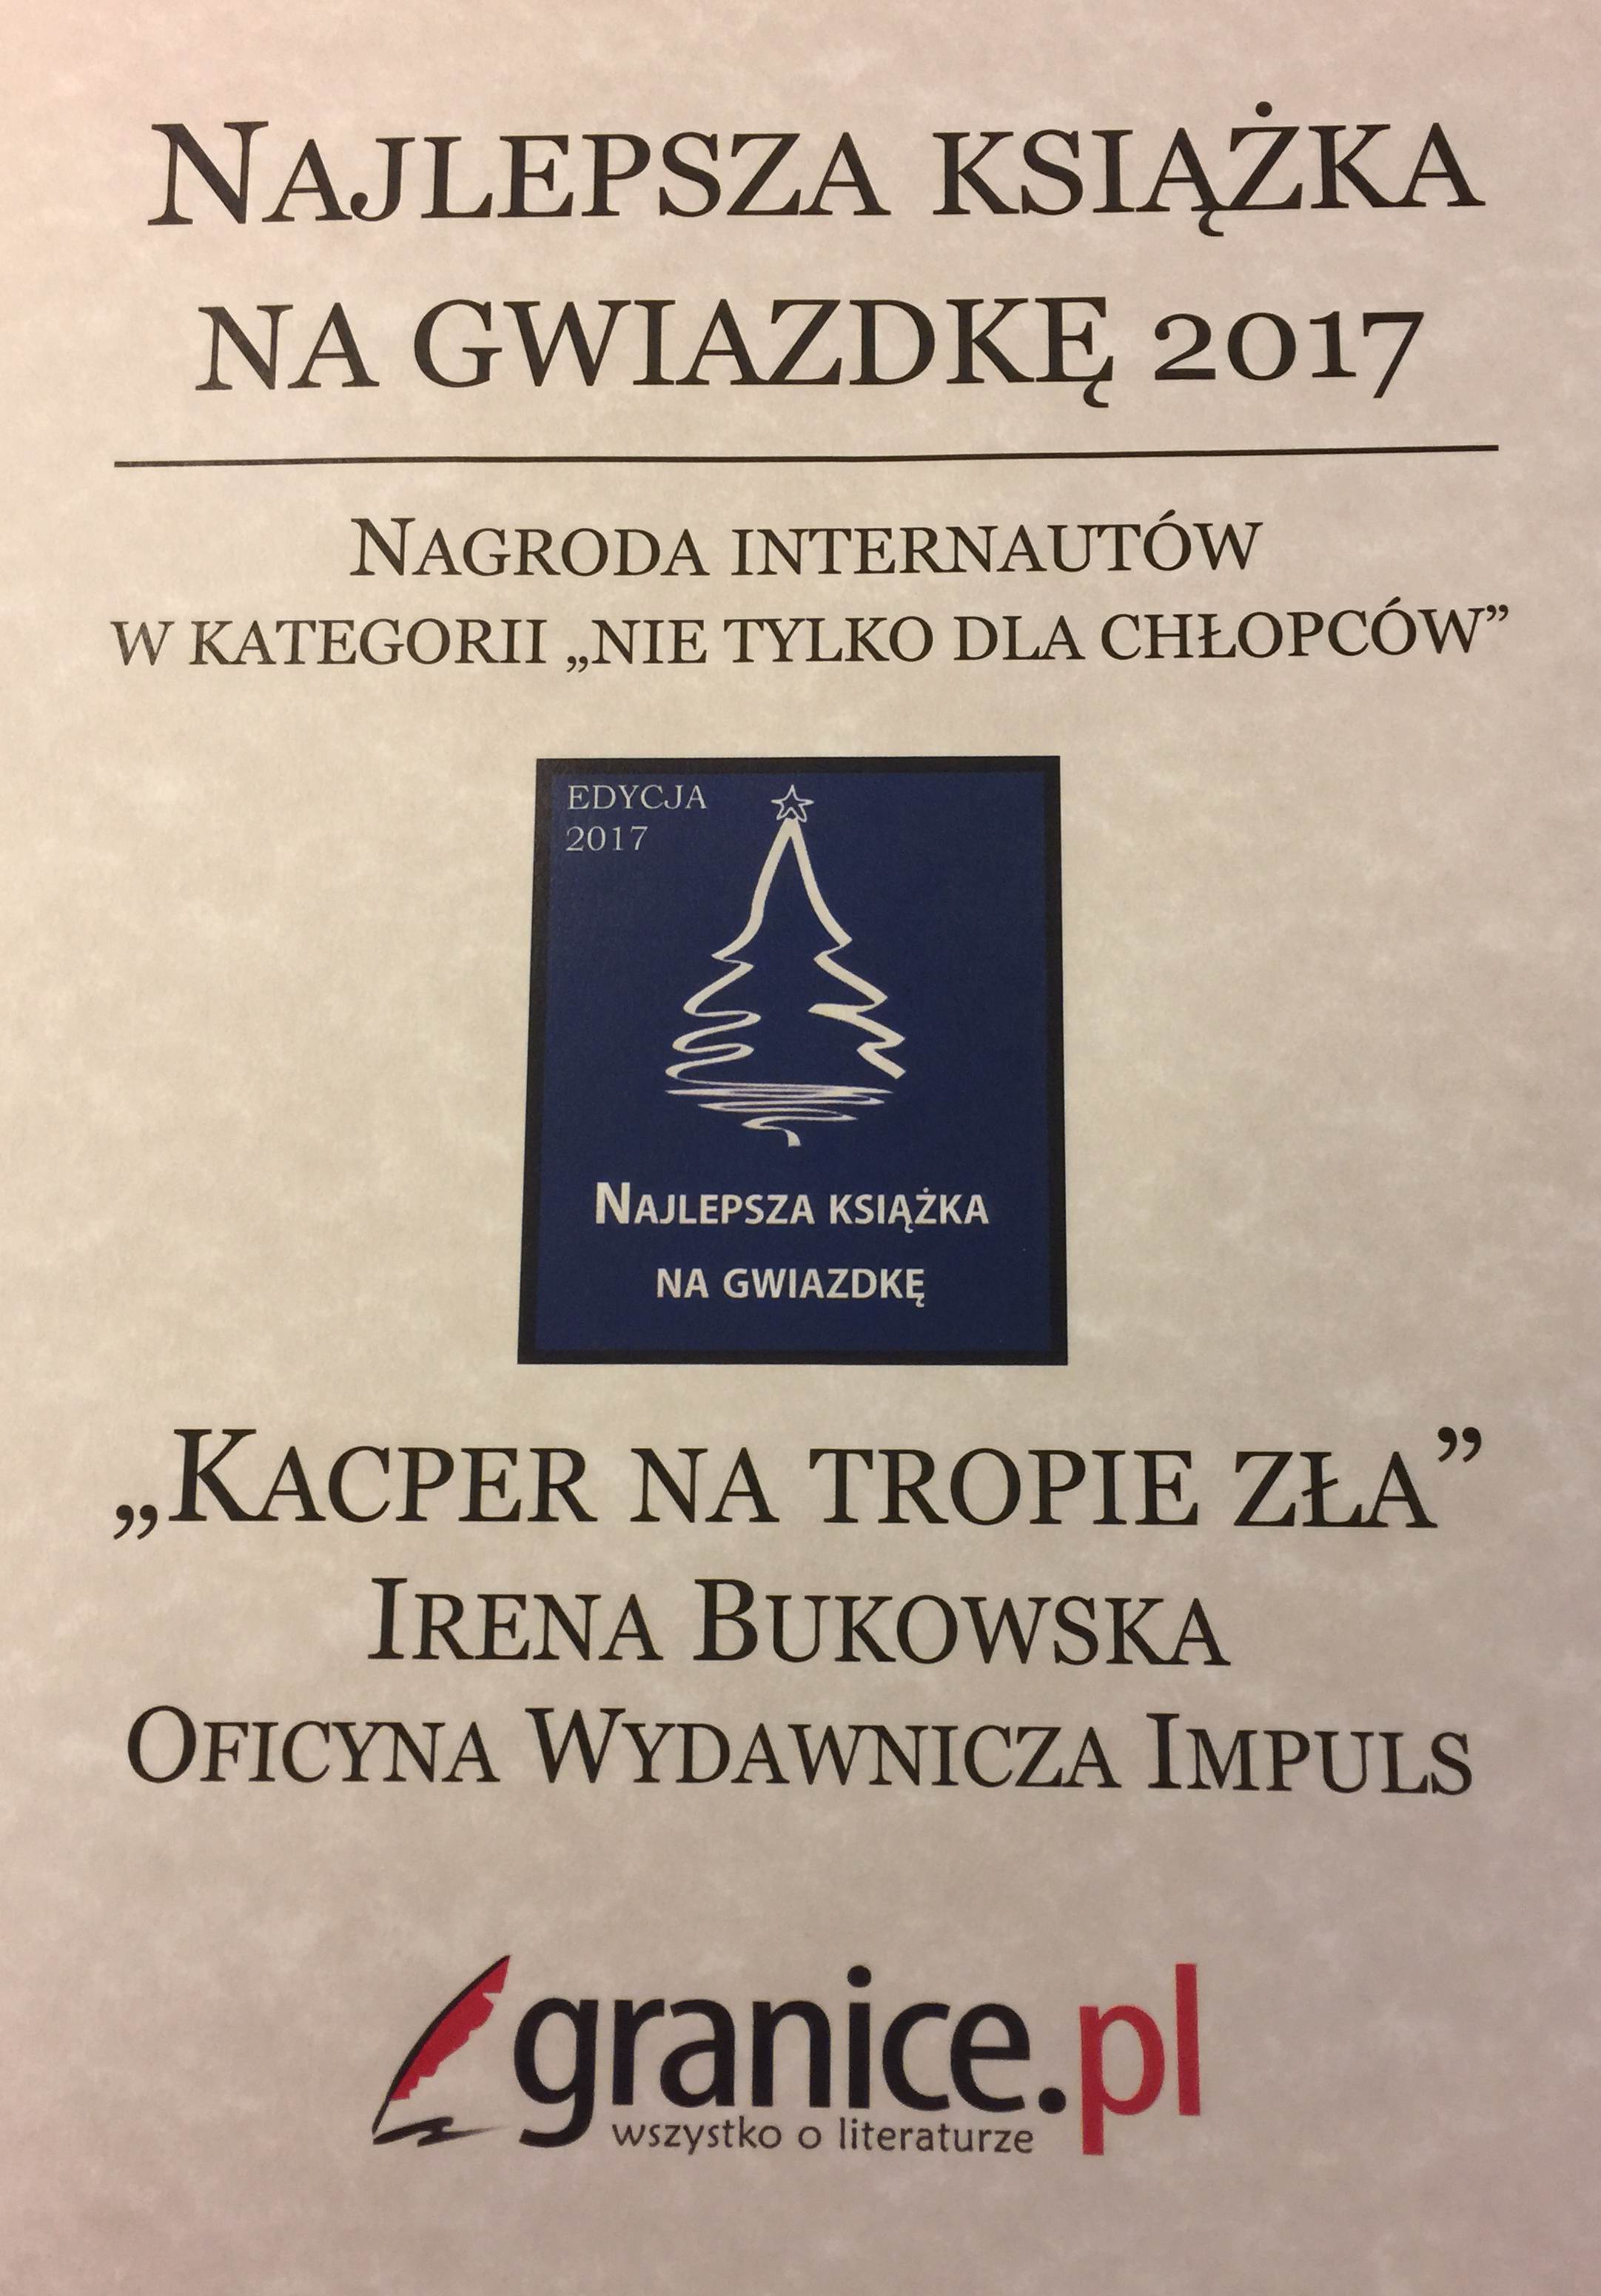 Duplom za Najlepszą KSiązke na Gwiazdę